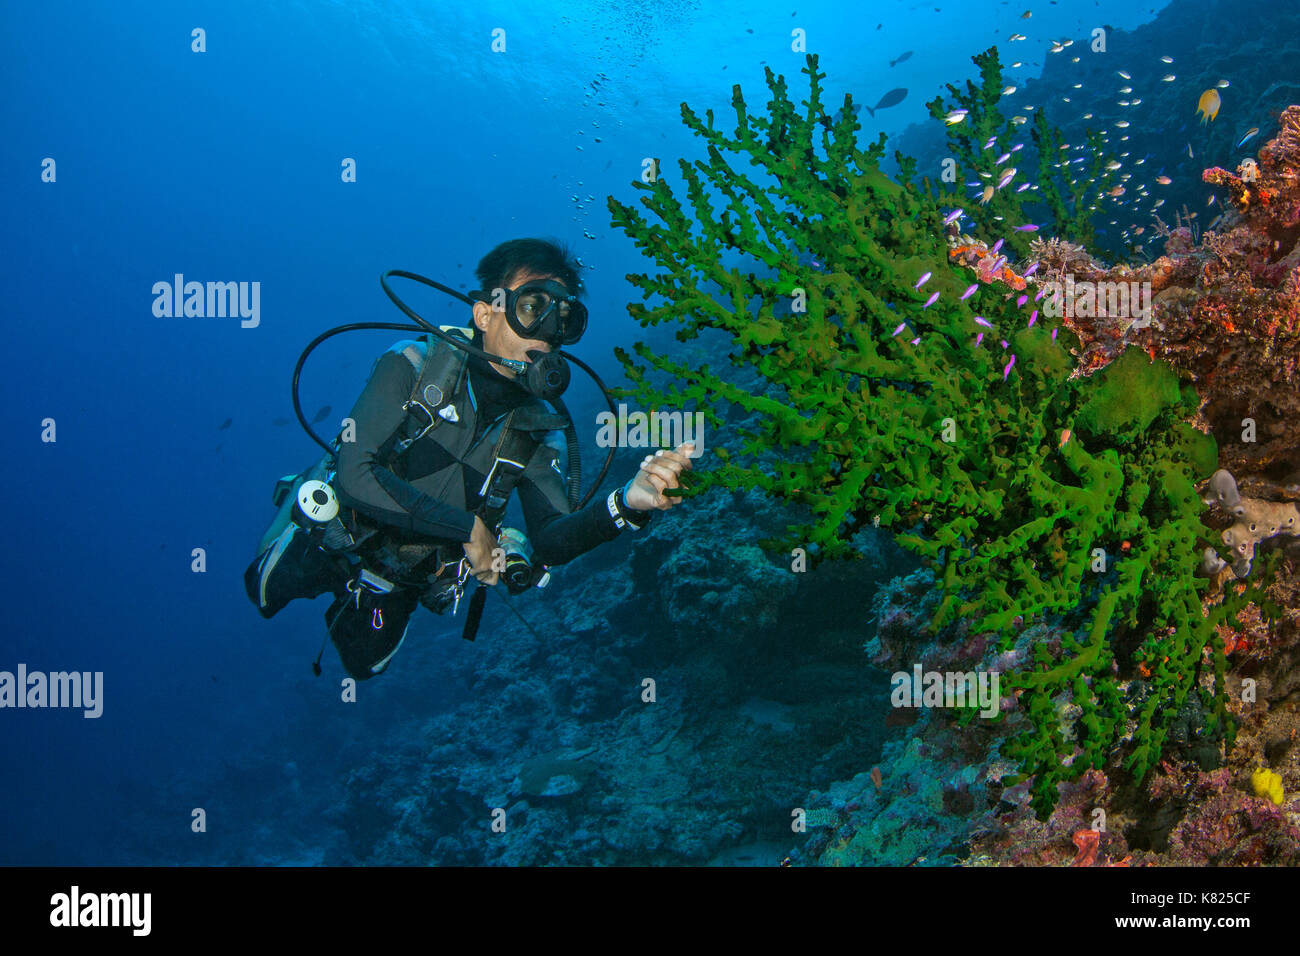 Malasia inspecciona dive master de terciopelo verde (coral Acropora sp.) por comensal critters. Spratly, en el Mar del Sur de China. Foto de stock